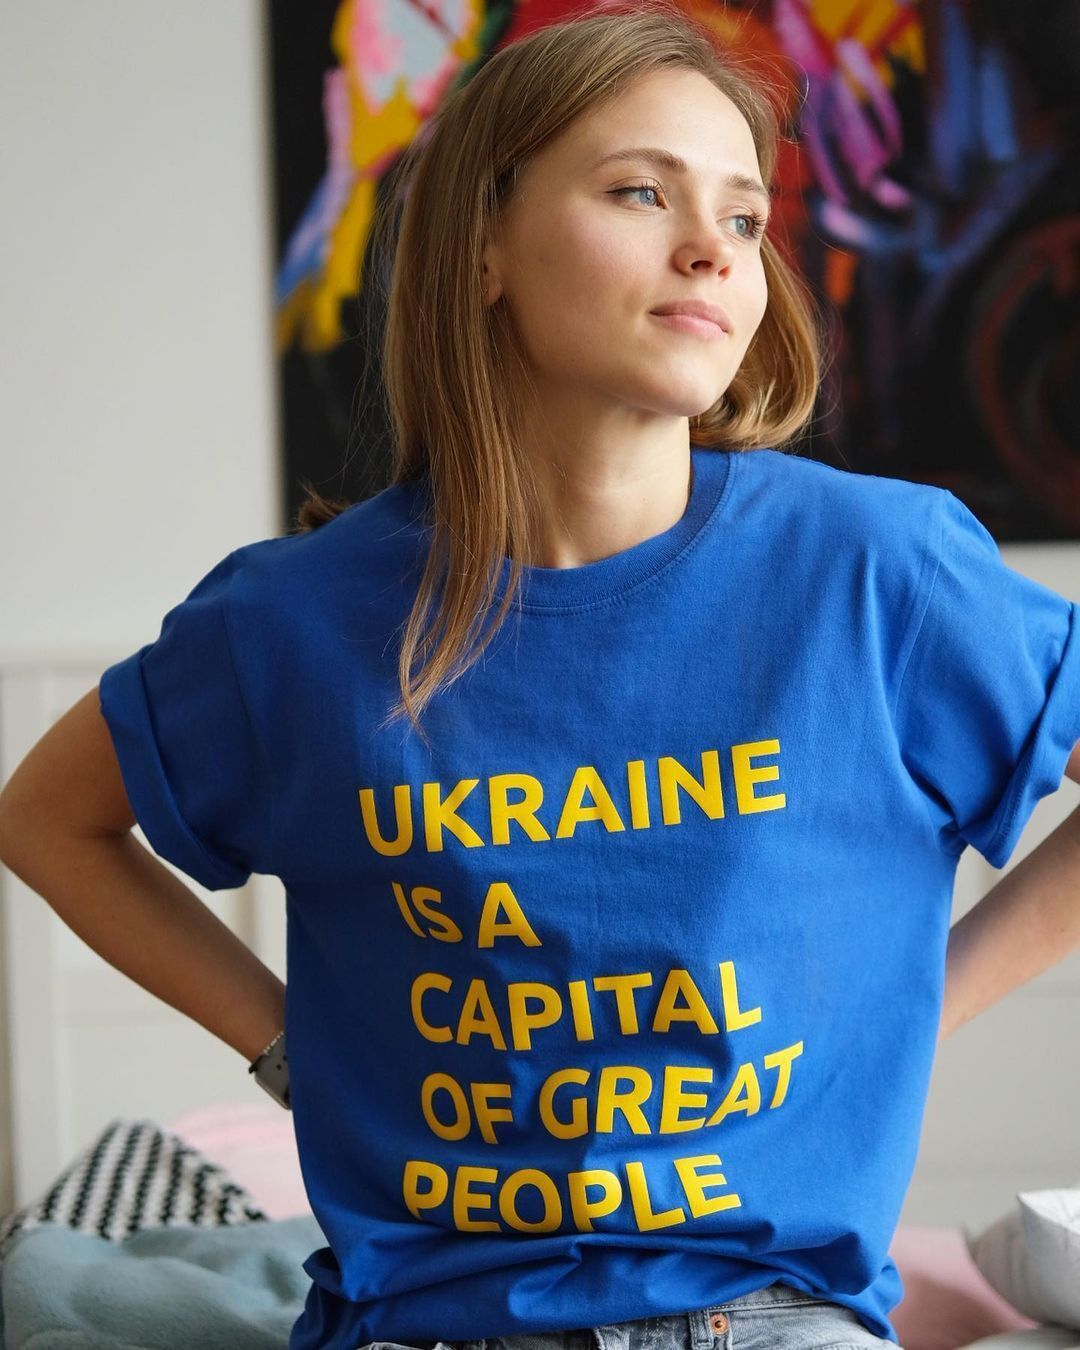 Анна Кошмал ответила, почему снималась в "Сватах" после 2014 года, хотя ее коллеги поддерживали аннексию Крыма